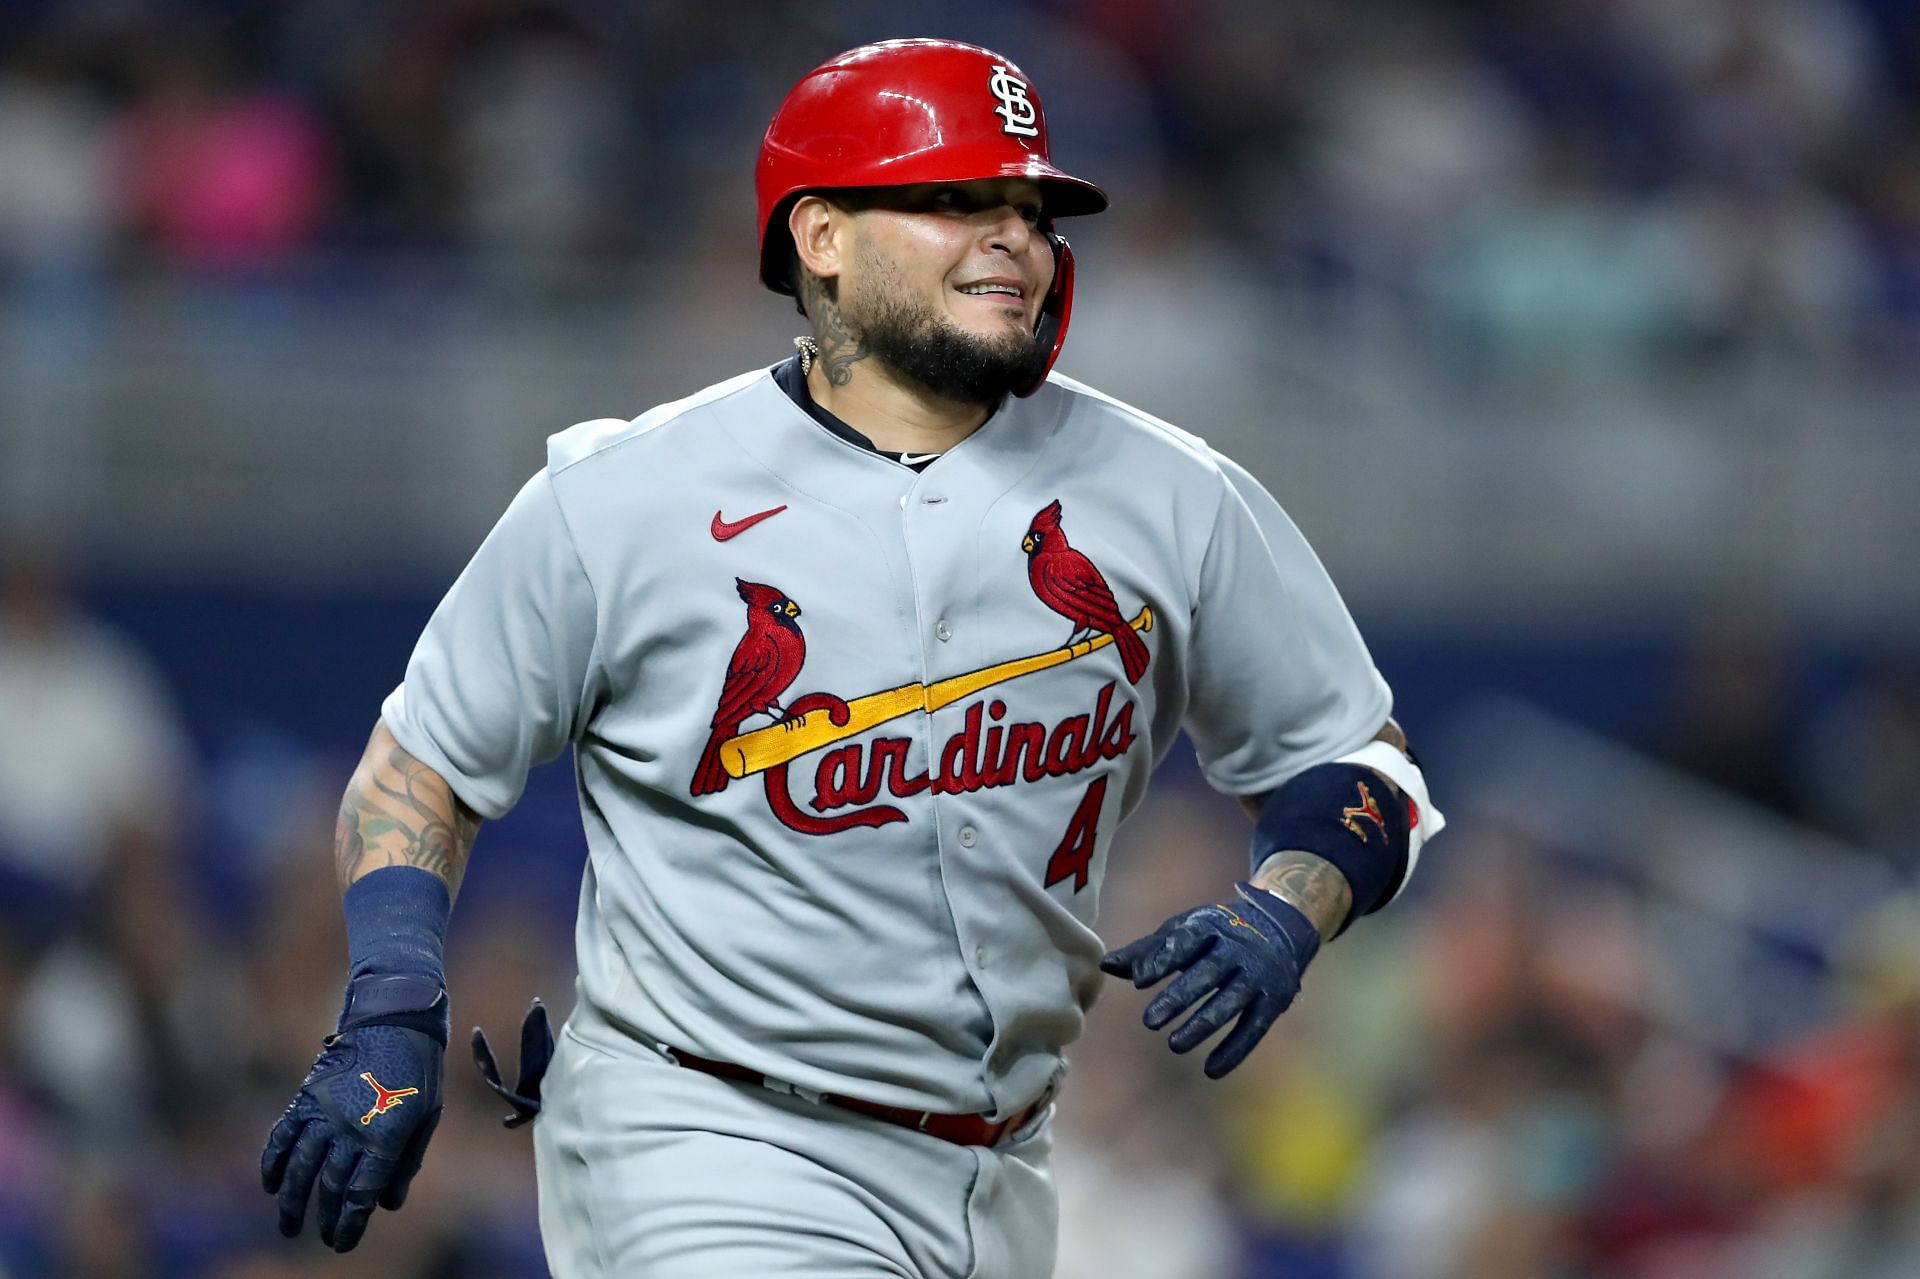 Cardinals put Yadier Molina at third base for an inning - NBC Sports